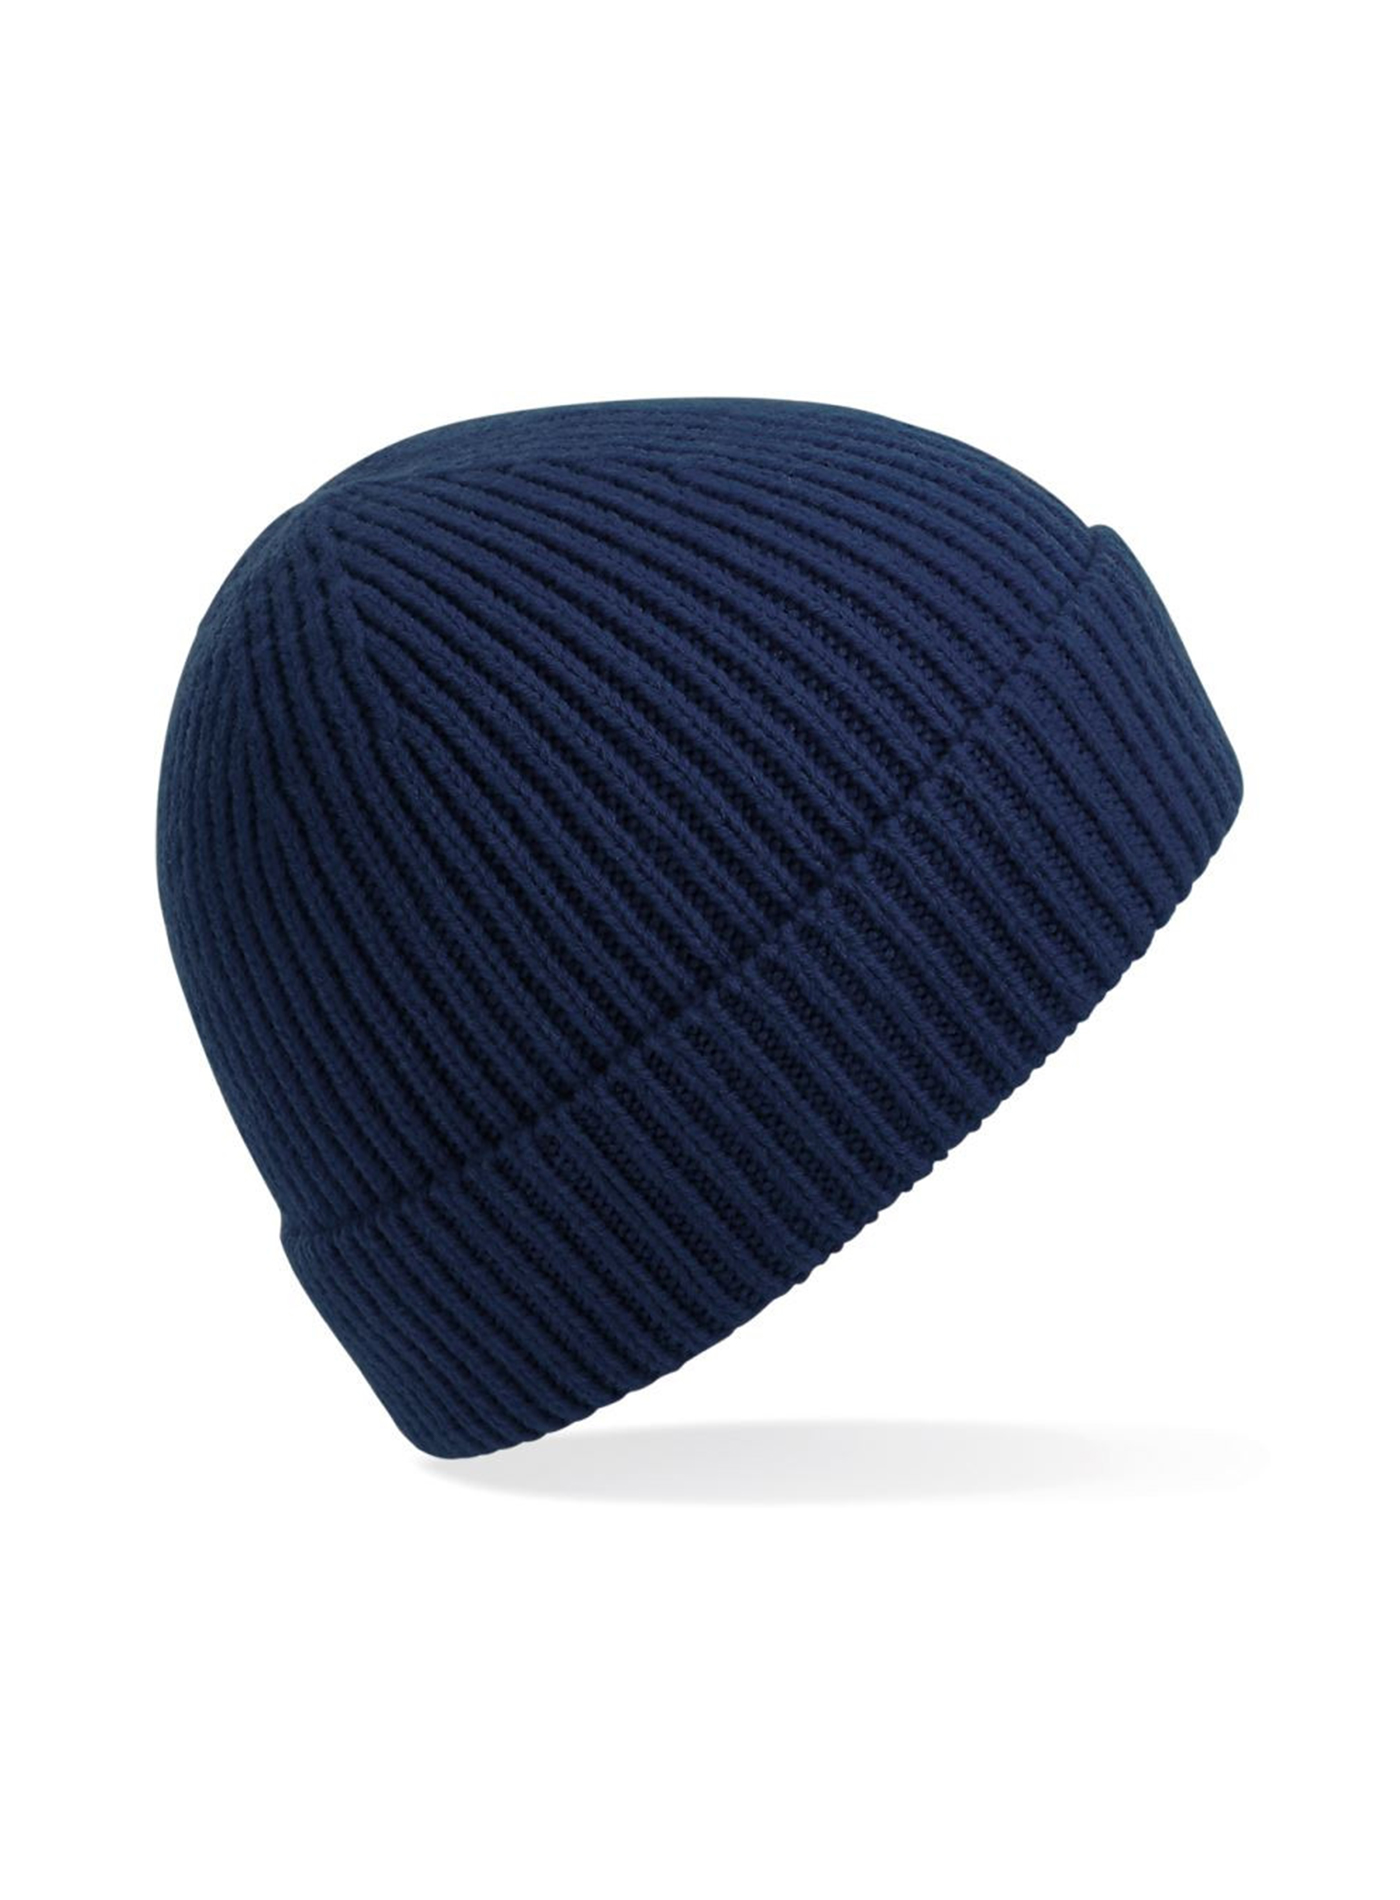 Čepice Beechfield Rib knit - Tmavá modrá univerzal